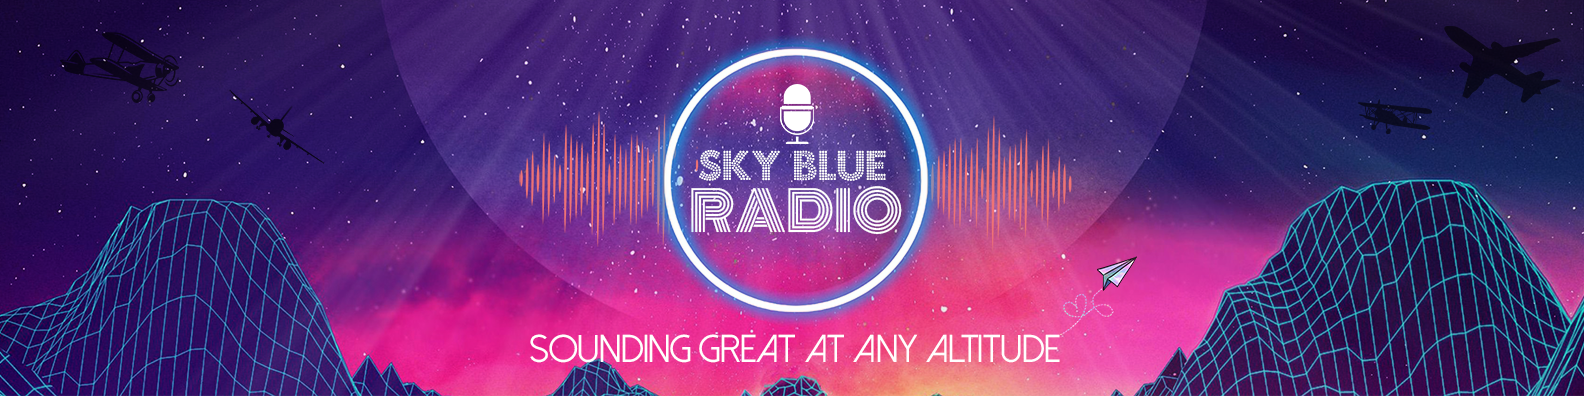 KSBR – Sky Blue Radio Denver